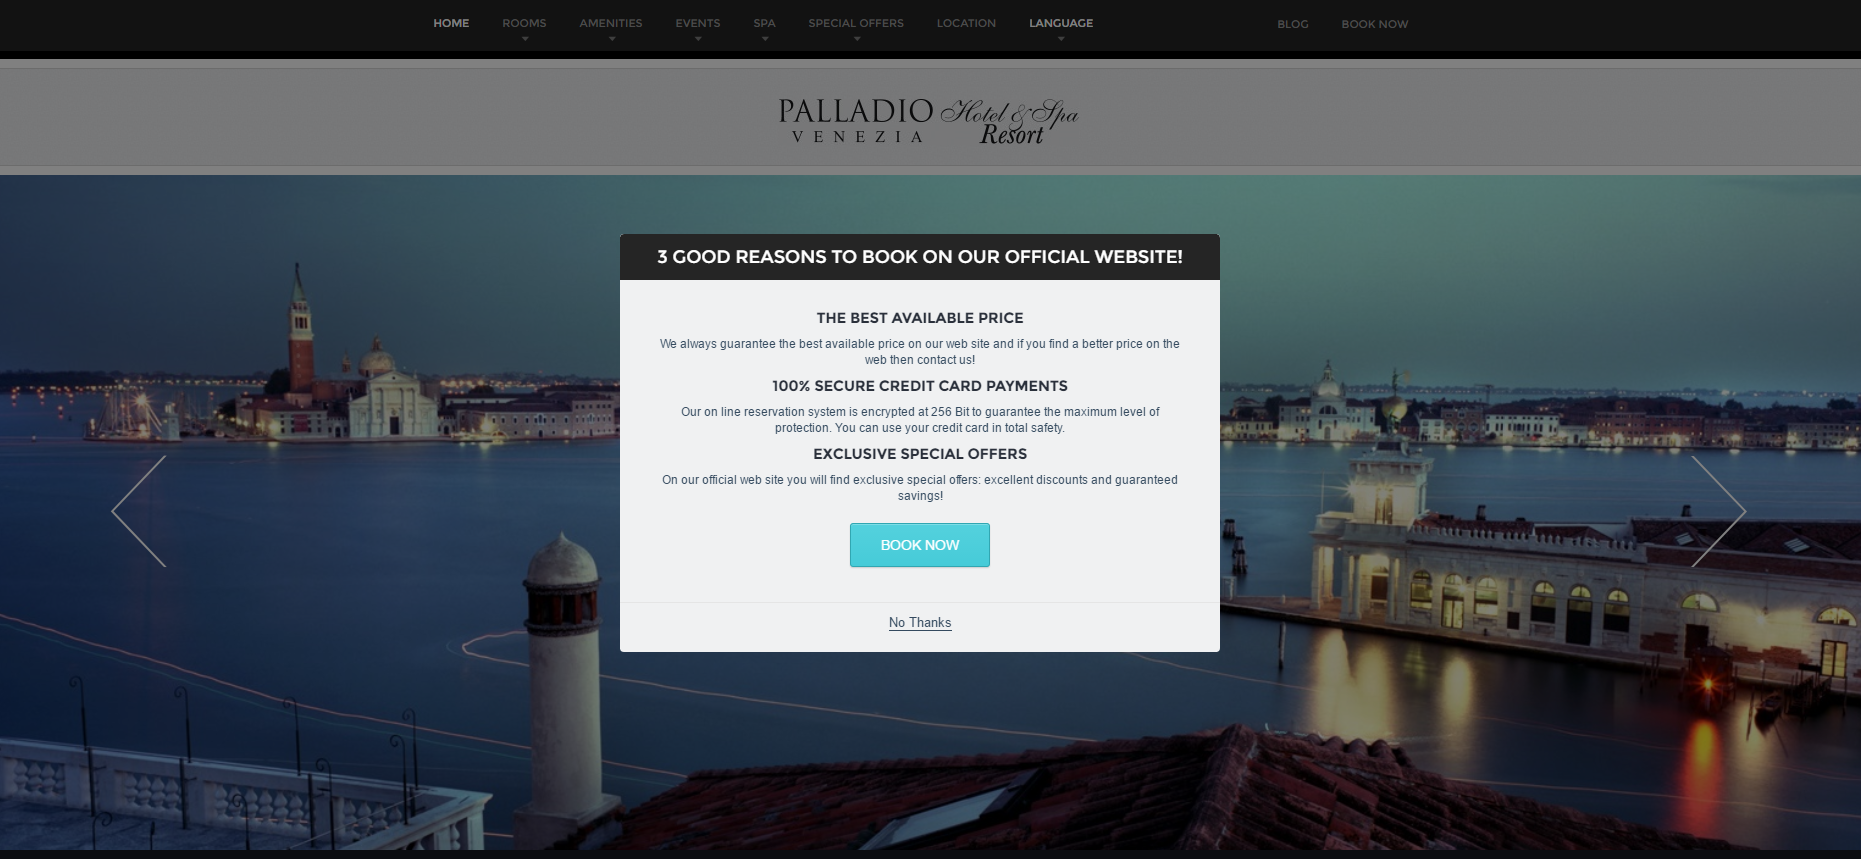 Página inicial do website do hotel Palladio